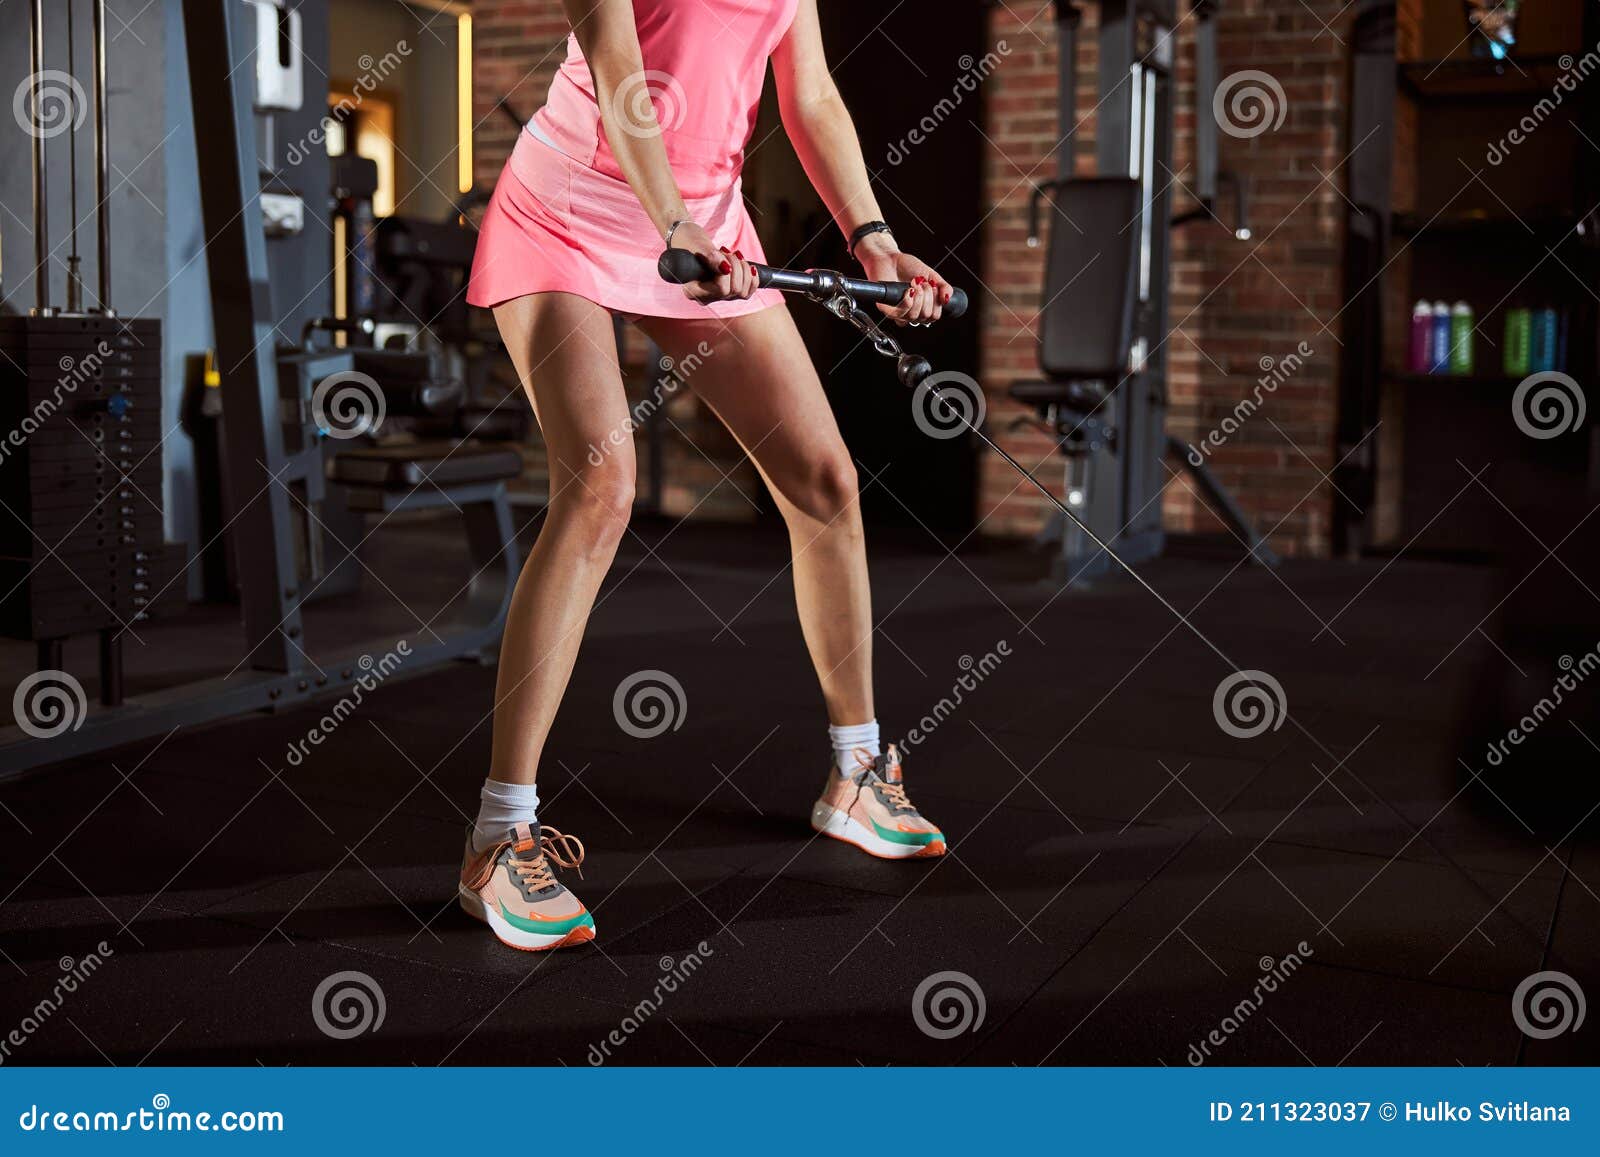 Fit Lady in Pink Outfit Hacer Ejercicio En El Gimnasio Imagen de archivo -  Imagen de atleta, rosa: 211323037